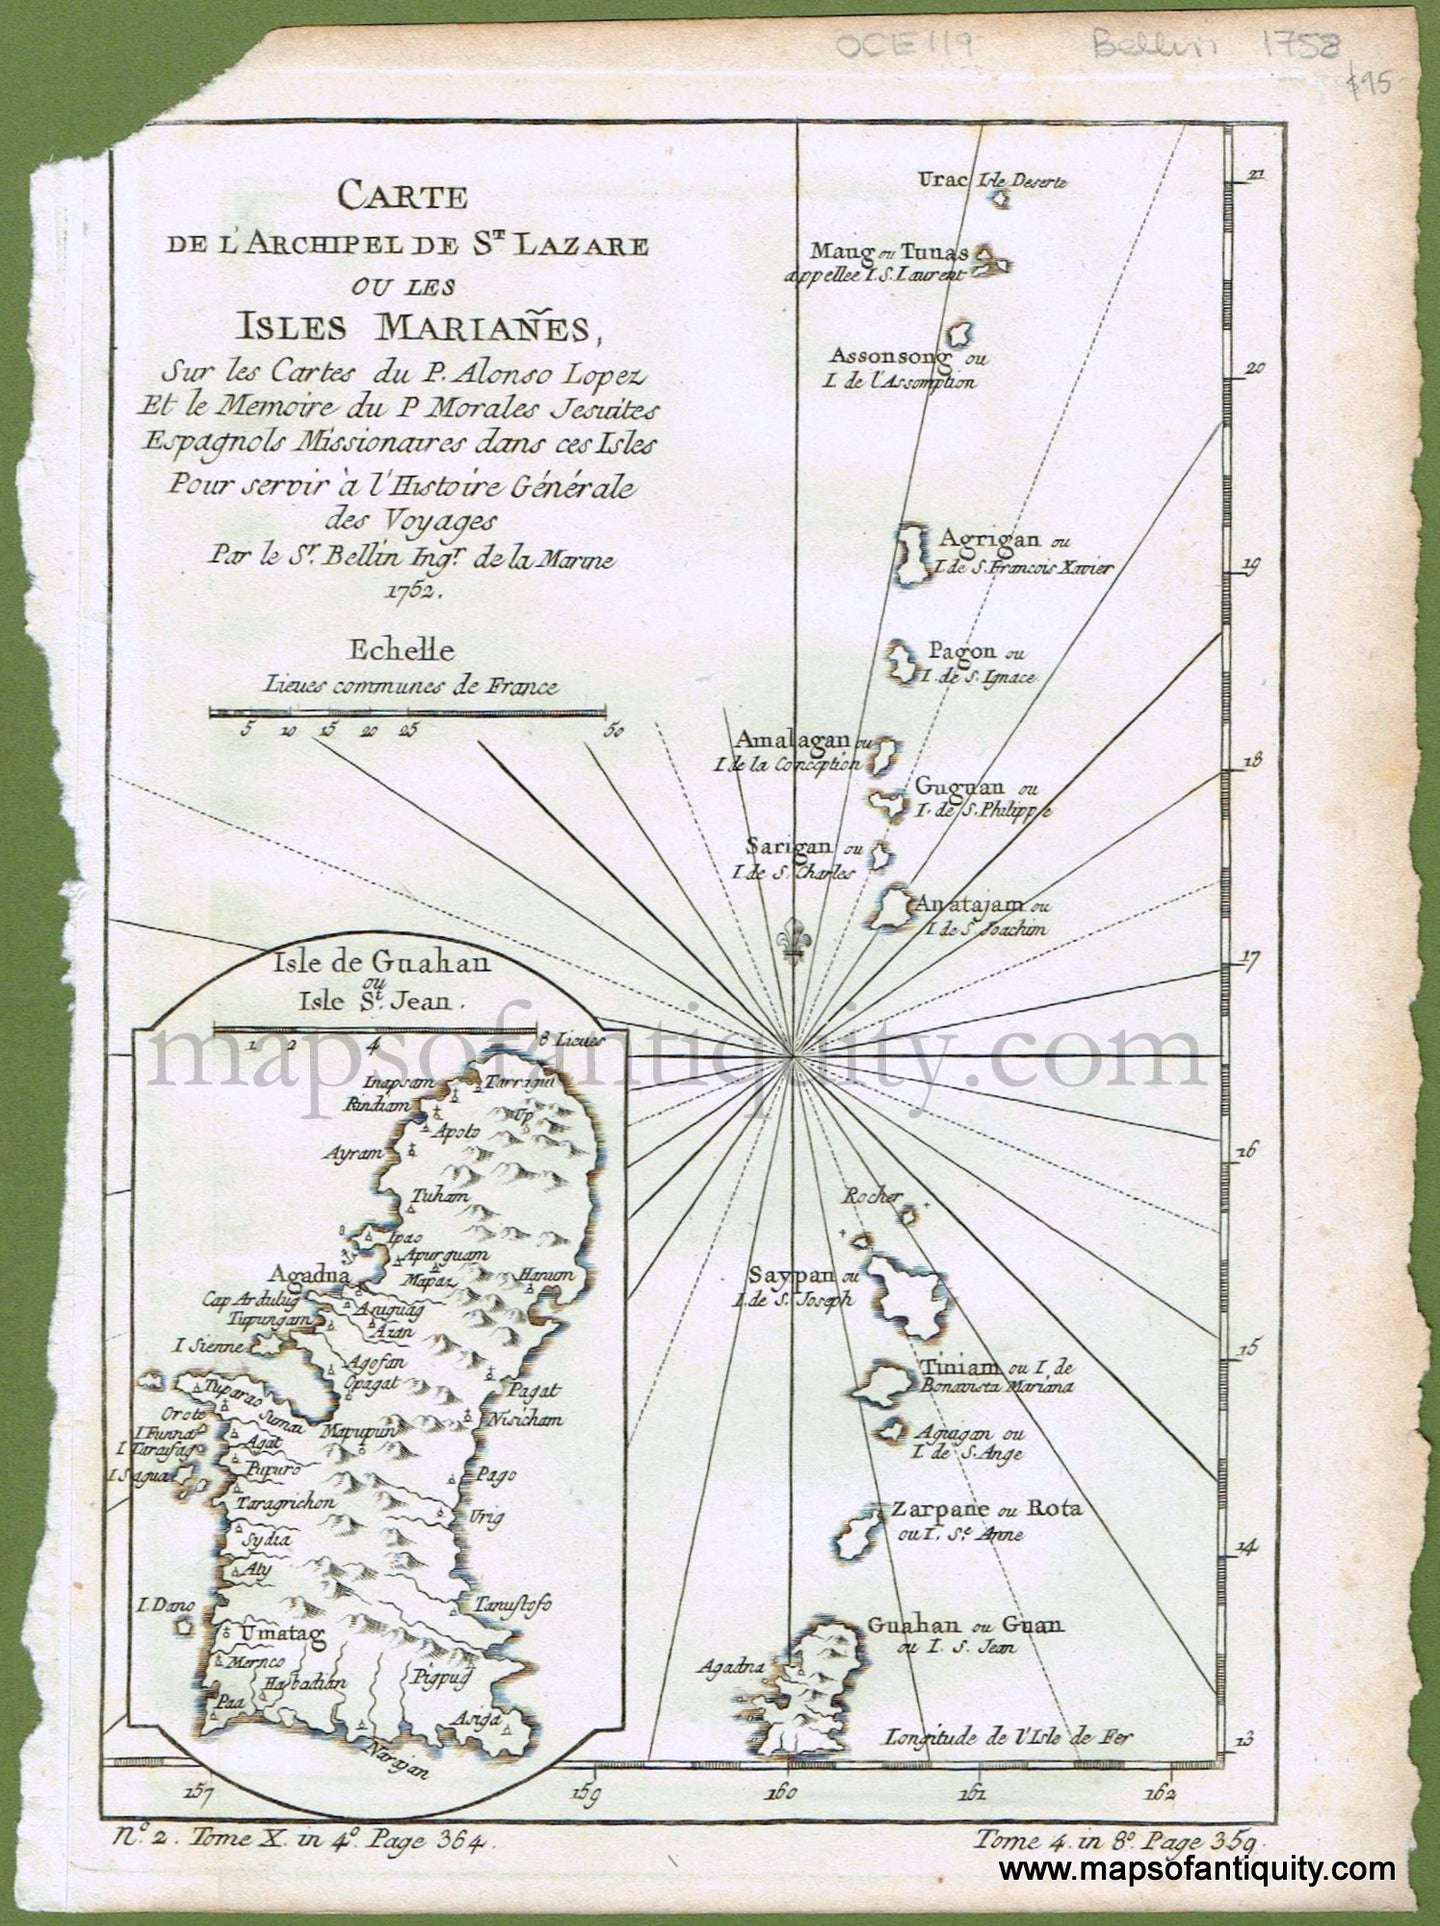 Antique-Map-Mariana-Islands-Guam-Oceania-Oceanica-Pacific-Carte-de-L'Archipel-de-St.-Lazare-ou-les-Isles-Marianes-Bellin-L'Histoire-Generale-des-Voyages-1752-1750s-1700s-Early-Mid-18th-Century-Maps-of-Antiquity